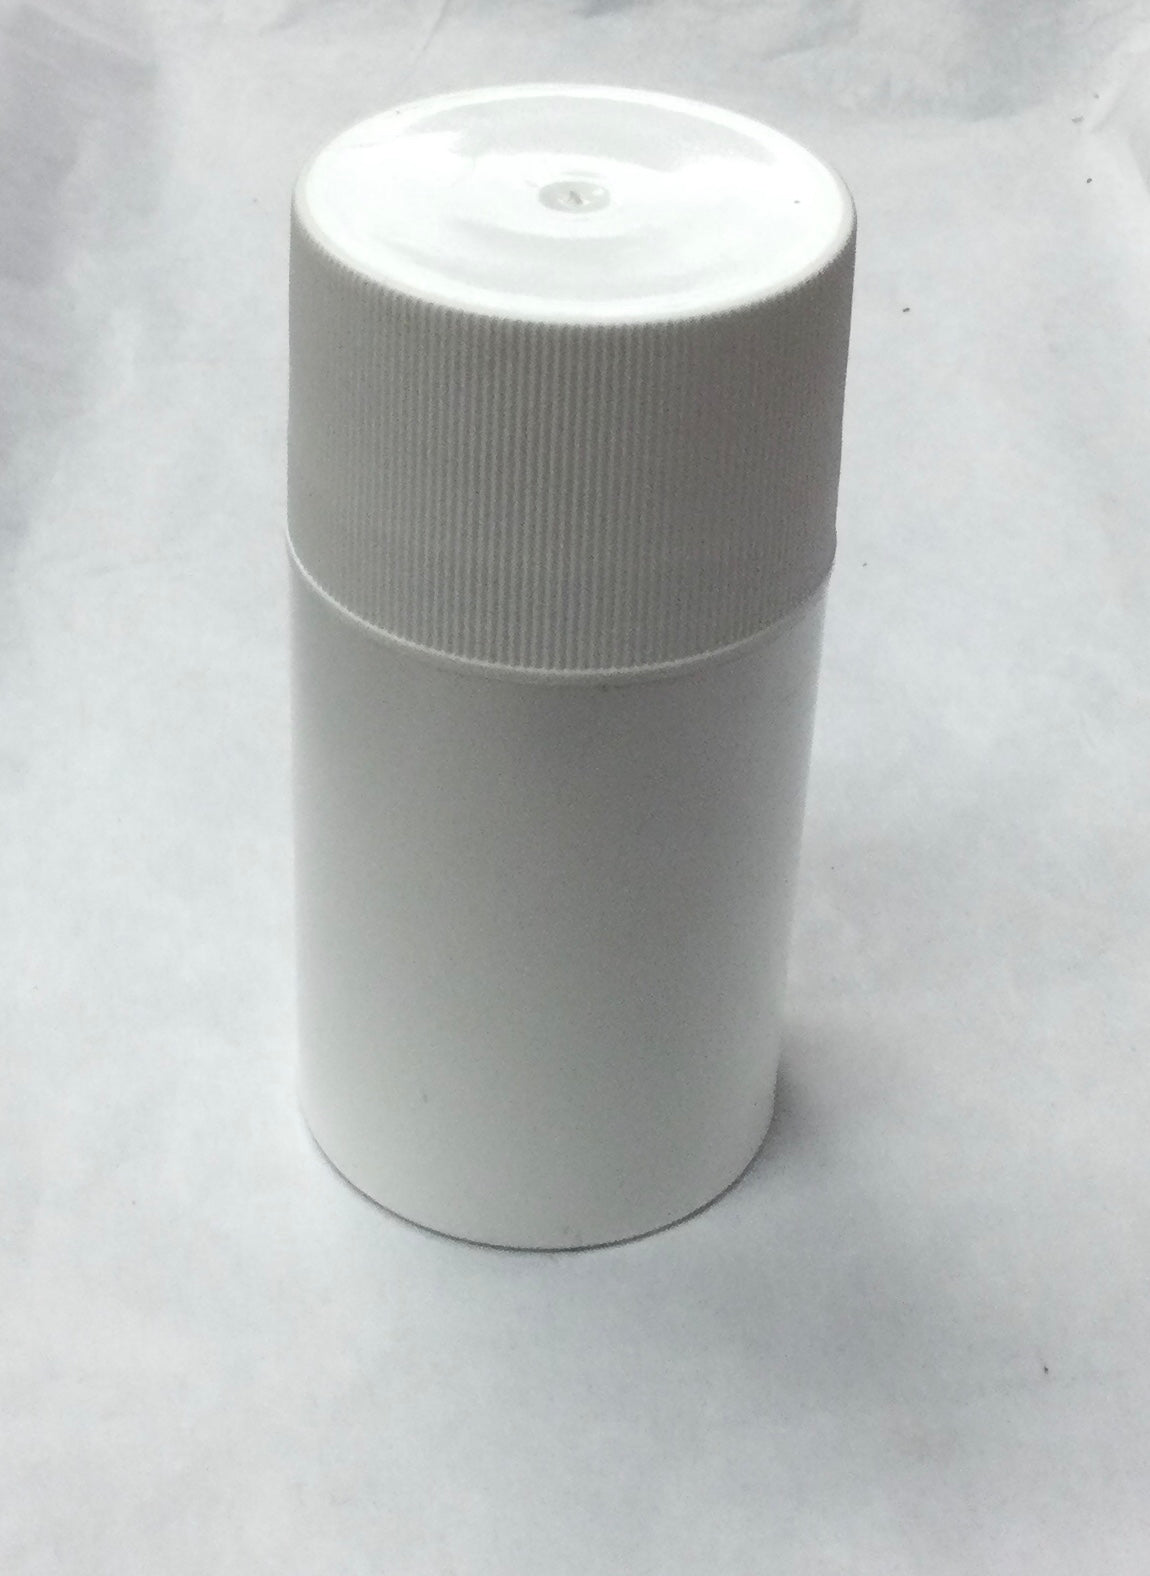 Deodorant Container, White, Push-up Tube